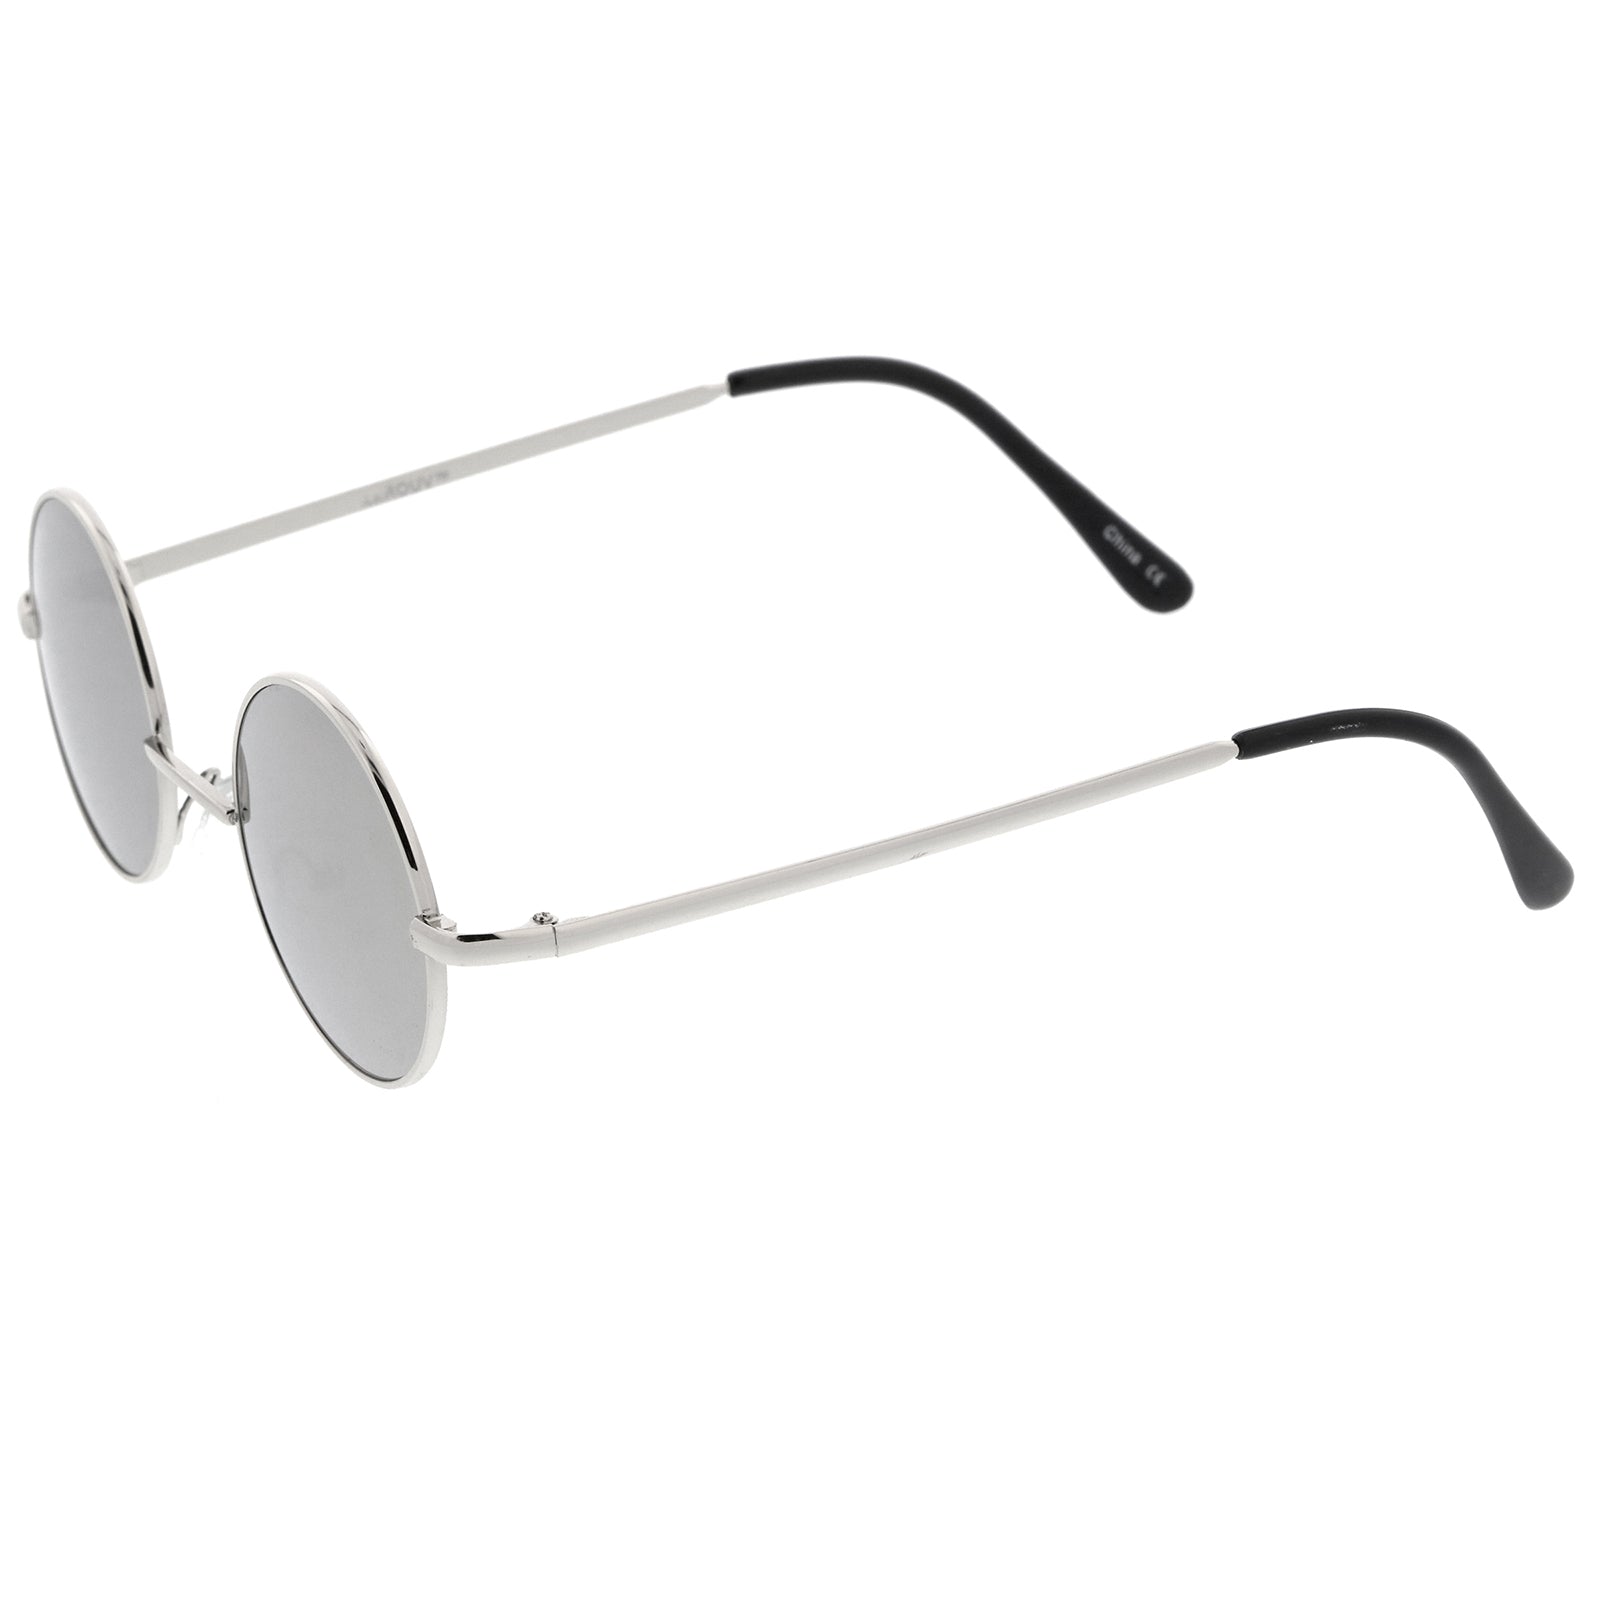 Sunglasses Retro Mirror Metal Lens Small Style Round Lennon 41 Colored